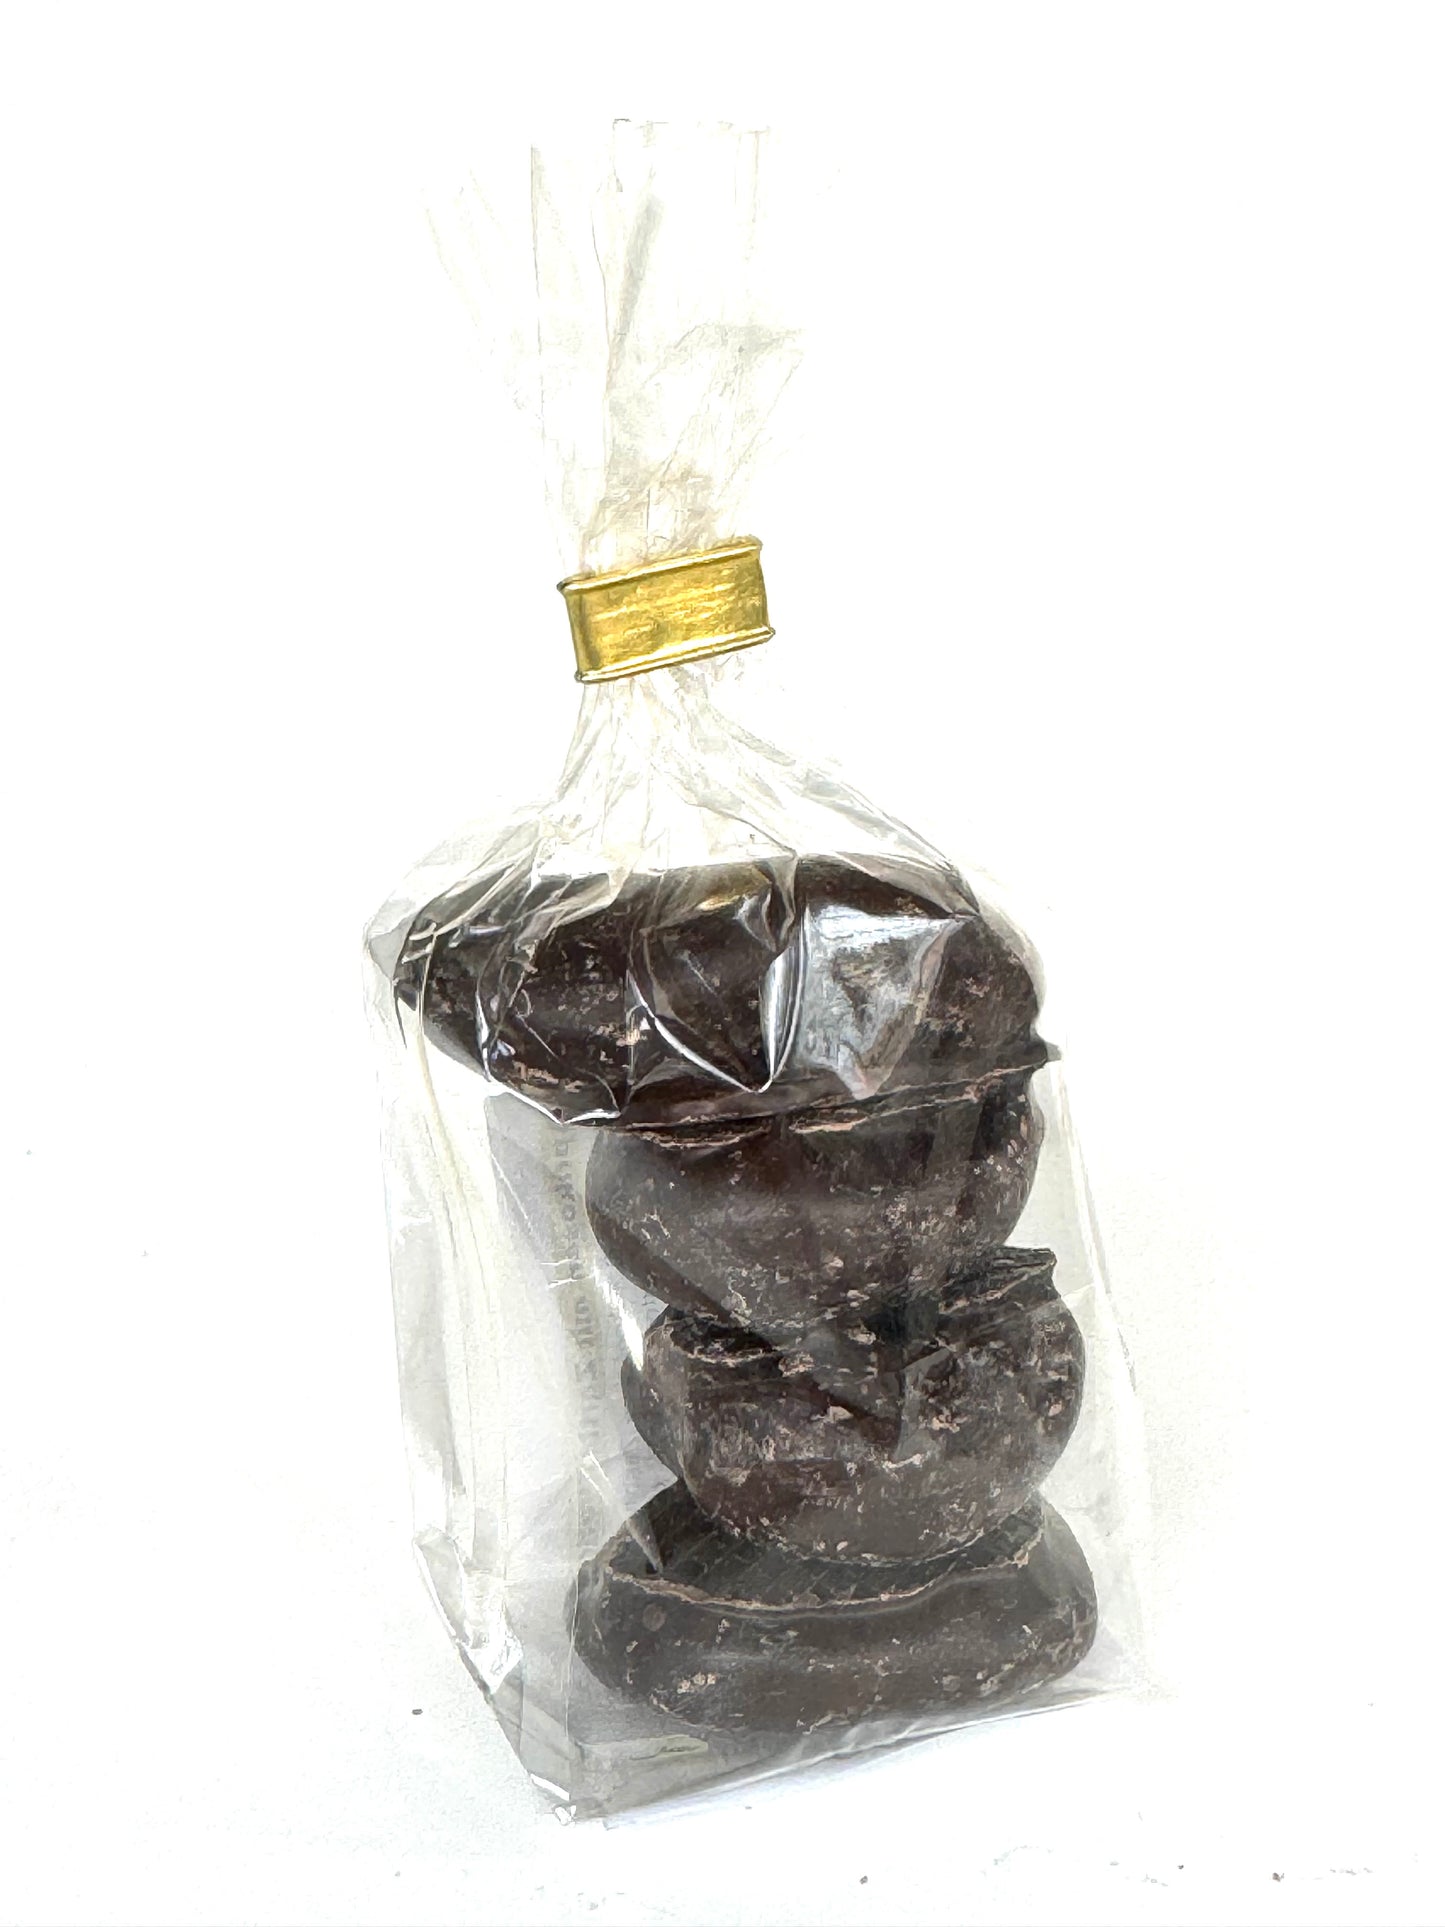 Натуральный абрикос в шоколаде, 70 г